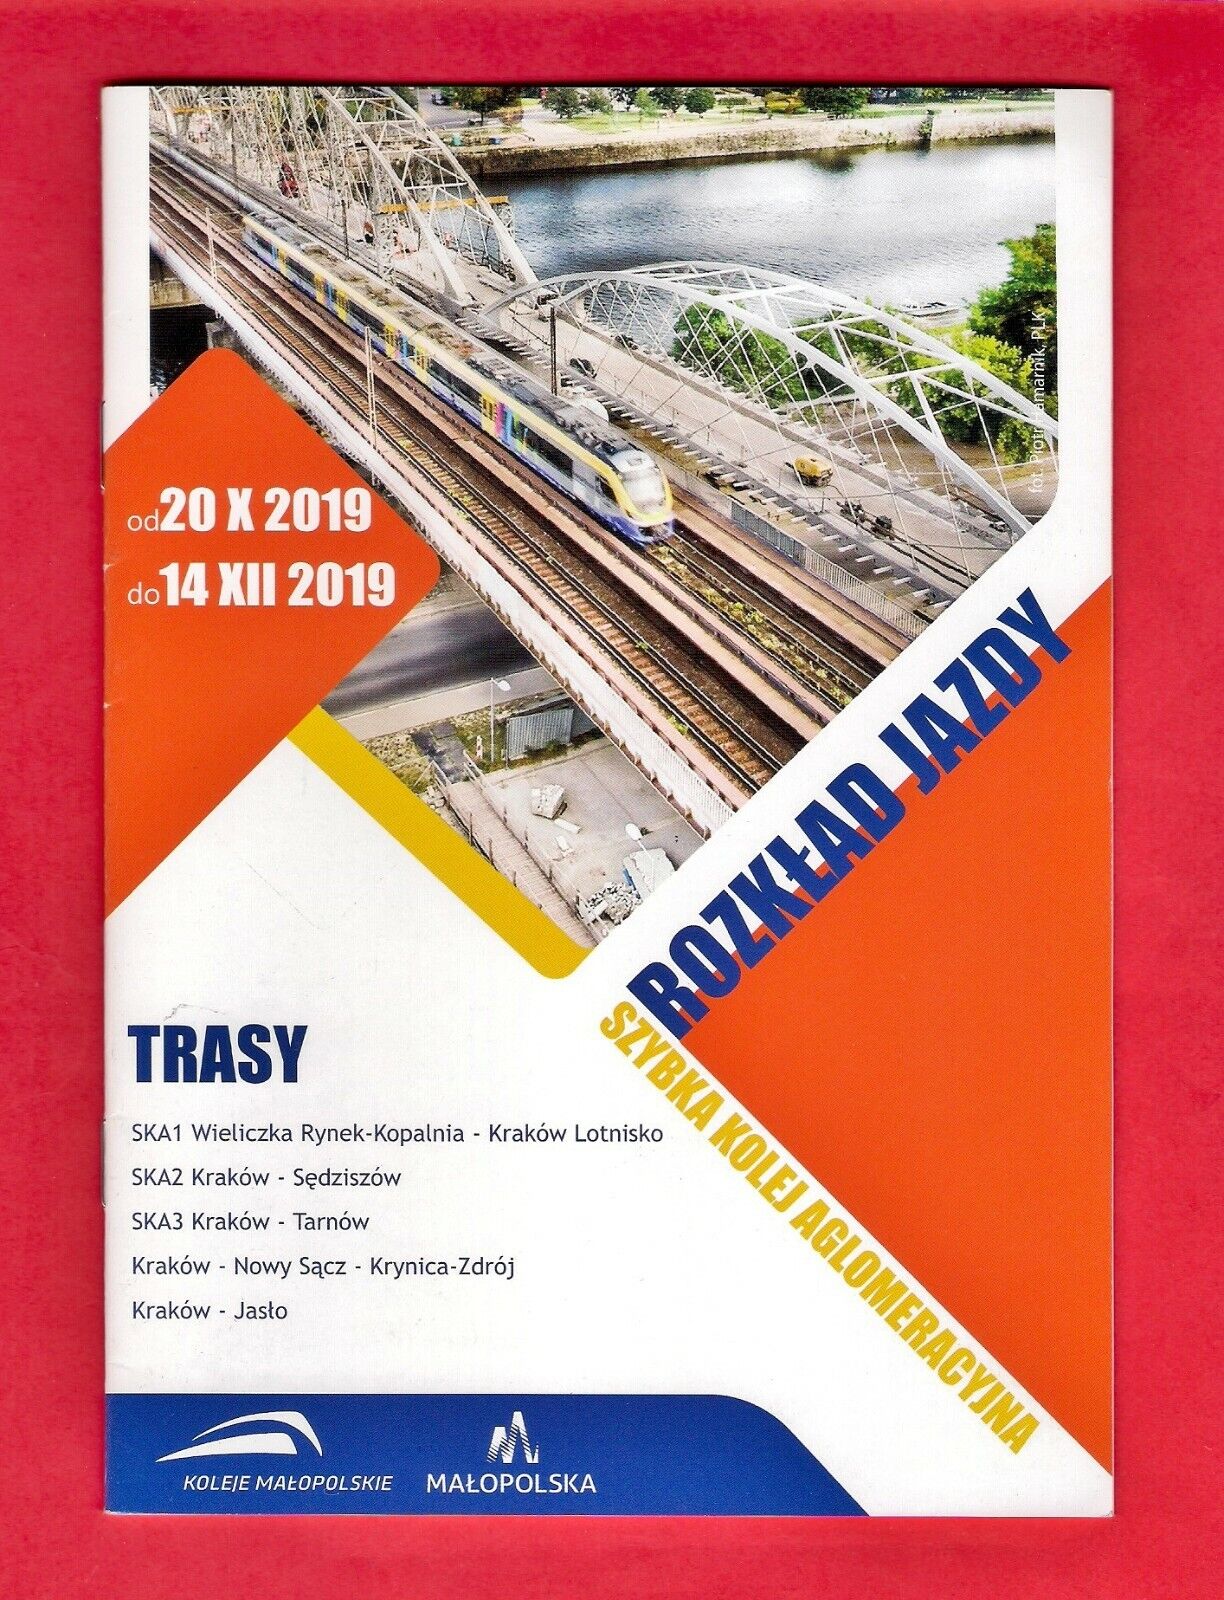 Train Timetable - Koleje Małopolskie - Lesser Poland Railways - Kraków - 2019